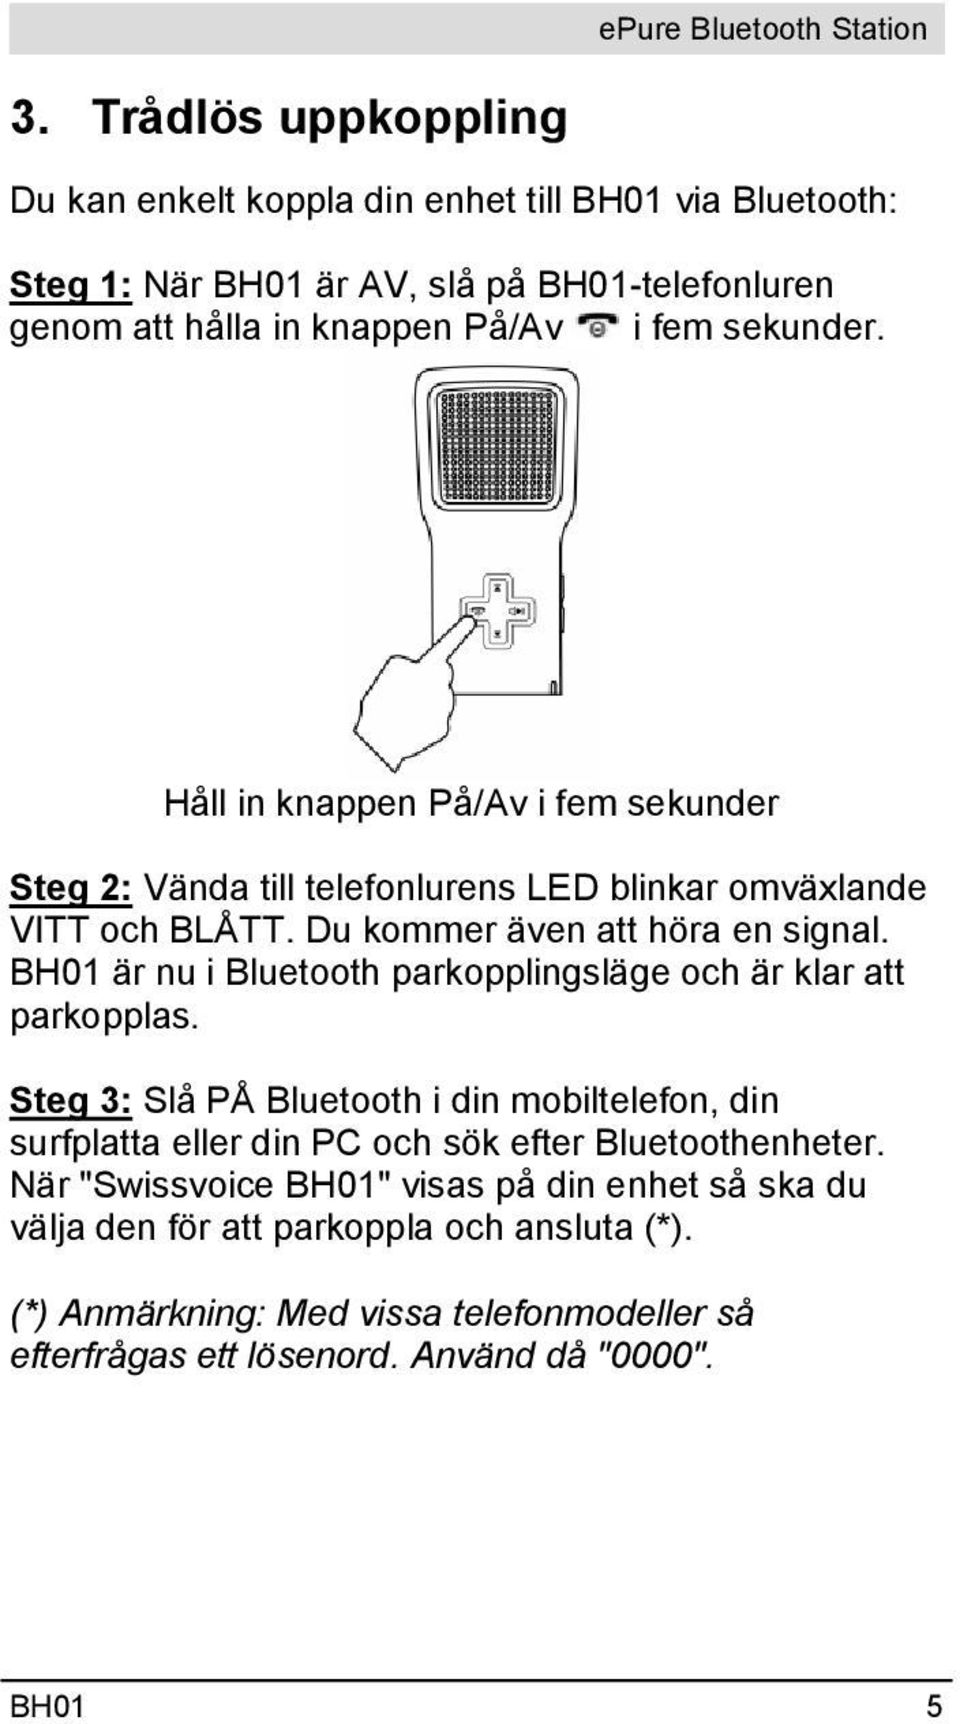 BH01 är nu i Bluetooth parkopplingsläge och är klar att parkopplas. Steg 3: Slå PÅ Bluetooth i din mobiltelefon, din surfplatta eller din PC och sök efter Bluetoothenheter.